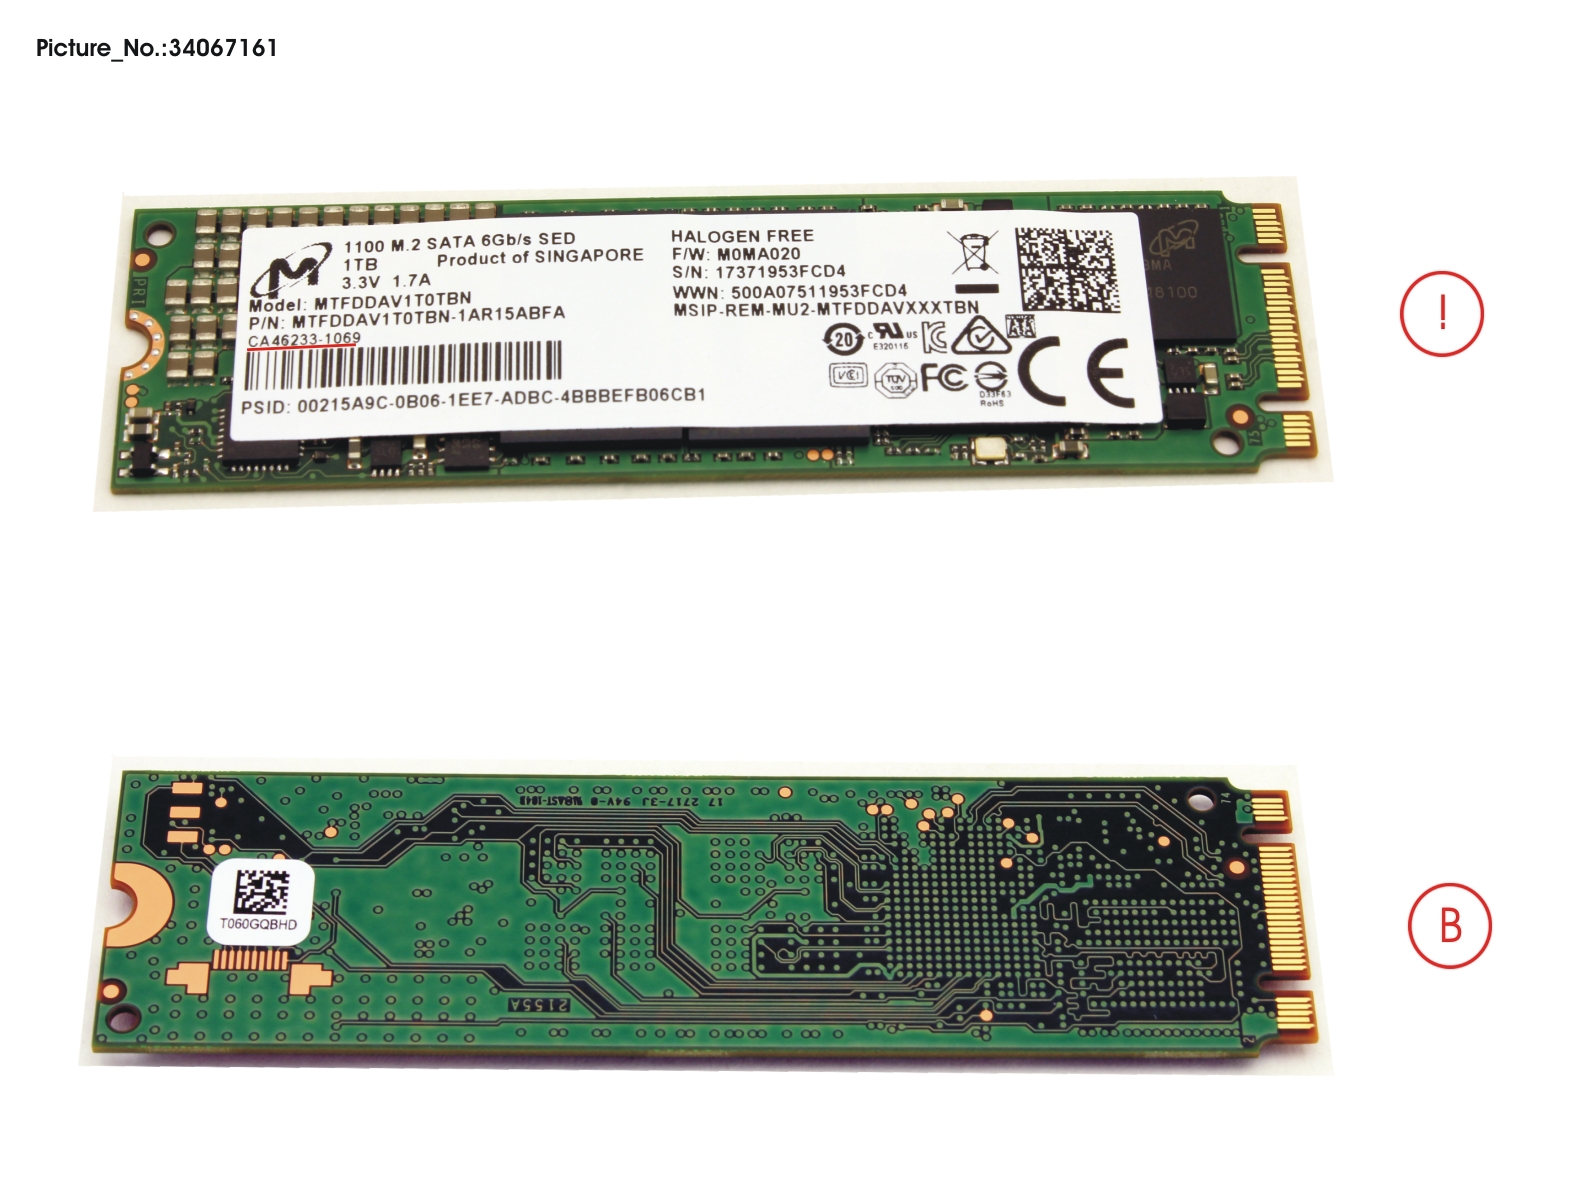 SSD S3 M.2 2280 MOI 1100 1TB(OPAL)